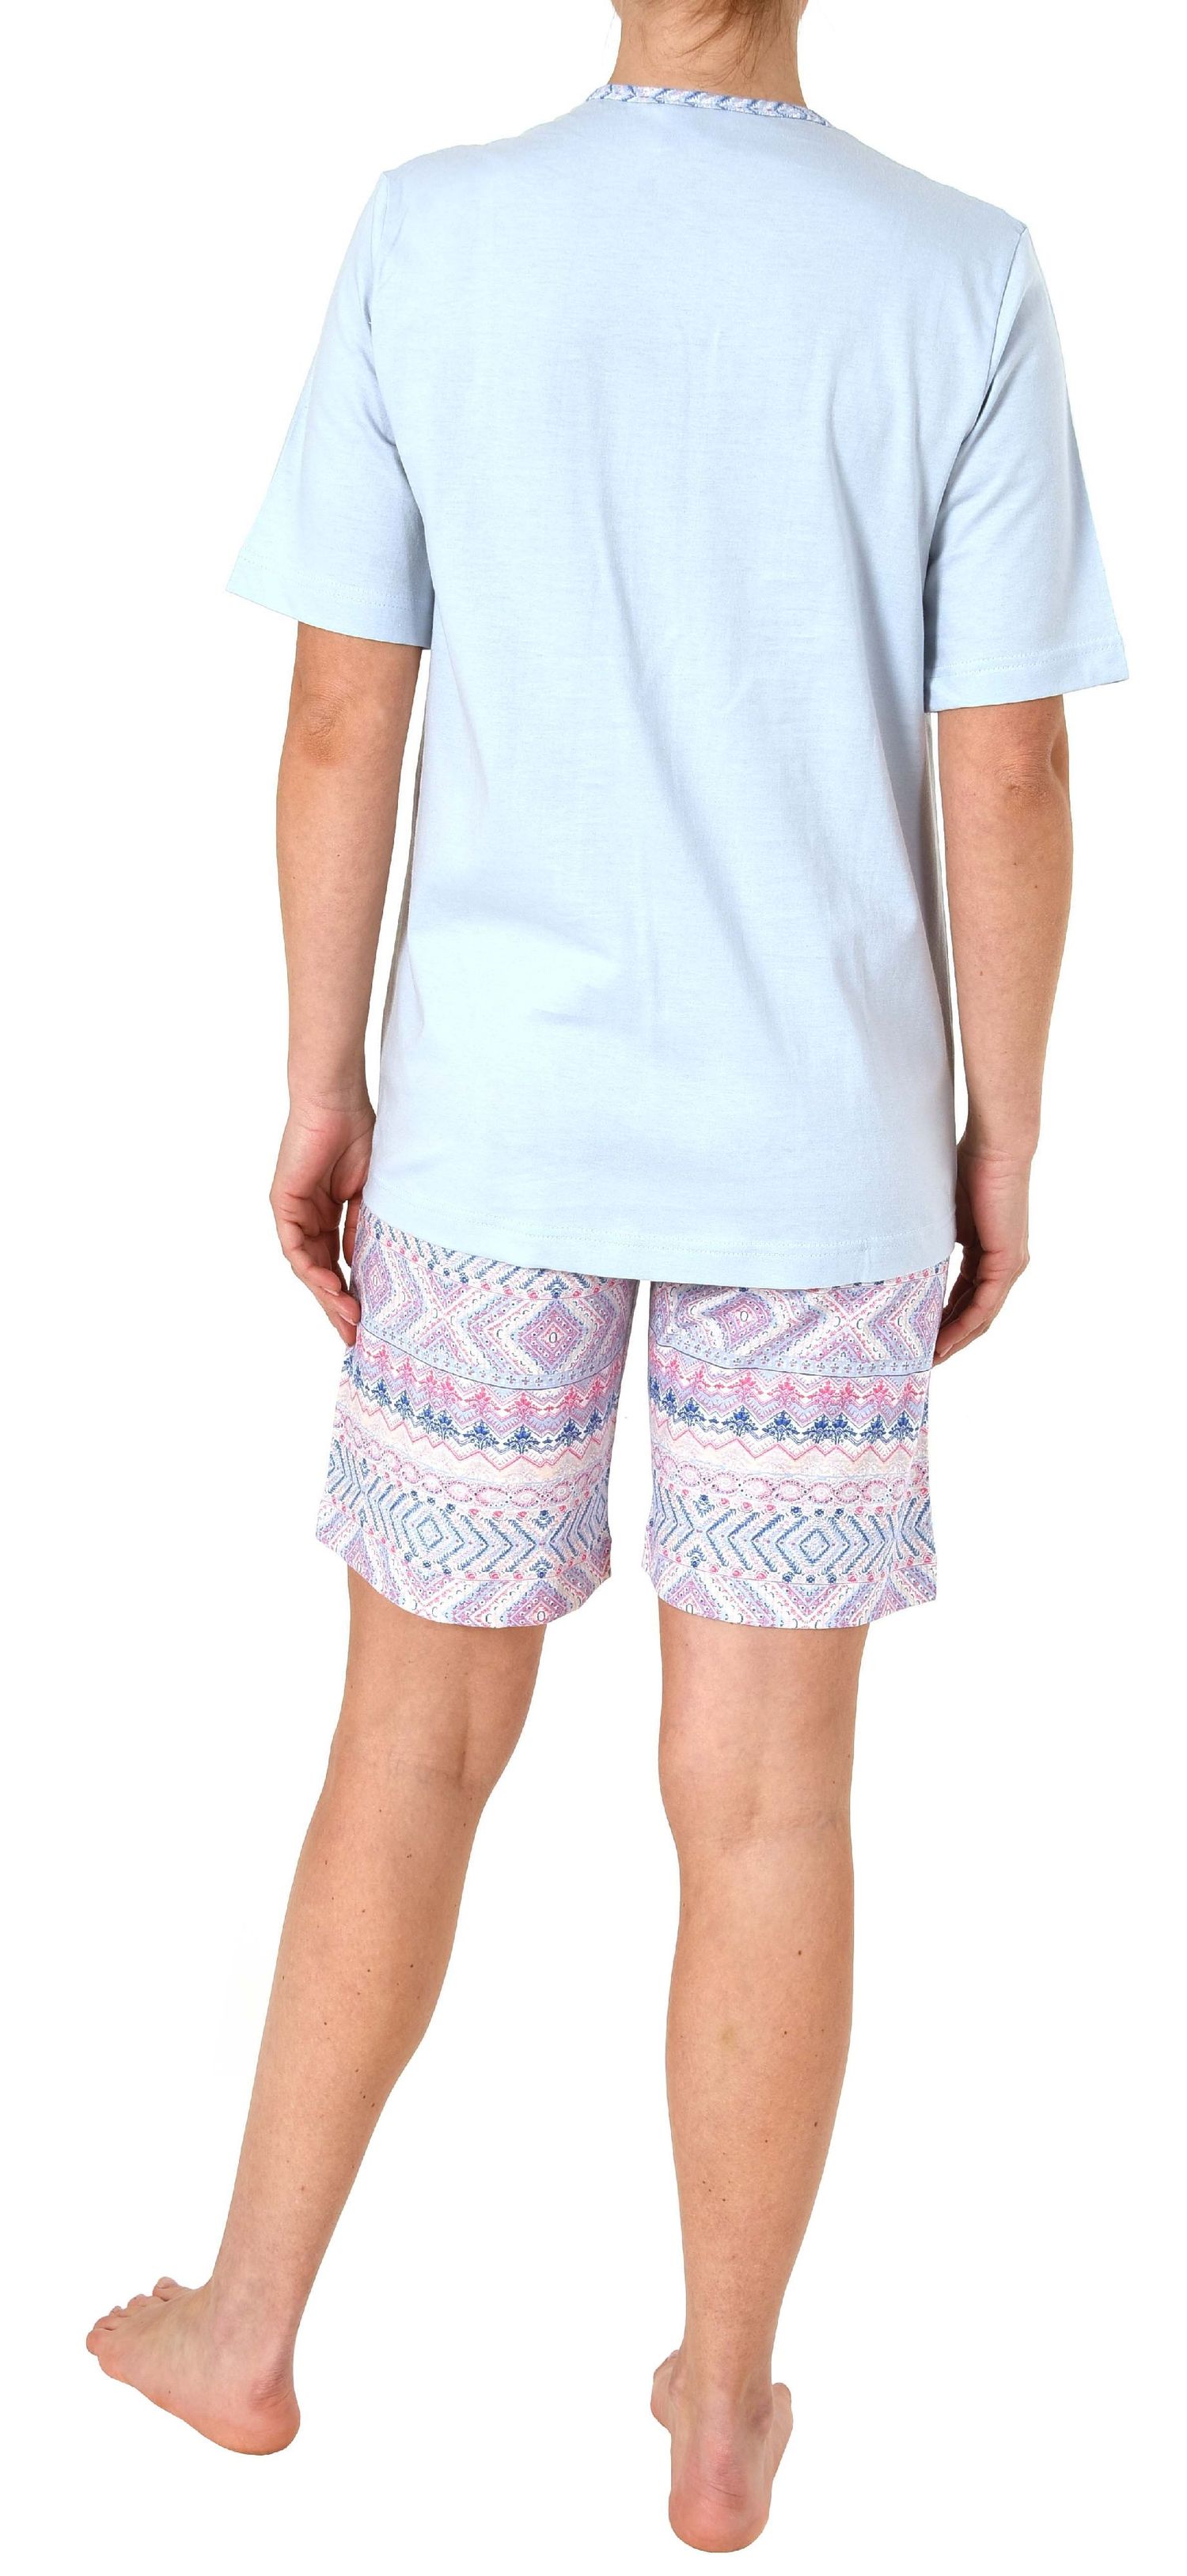 Damen Shorty Pyjama kurzarm Ethnolook - auch in Übergrössen bis Grösse 60/62 – 191 205 90 226